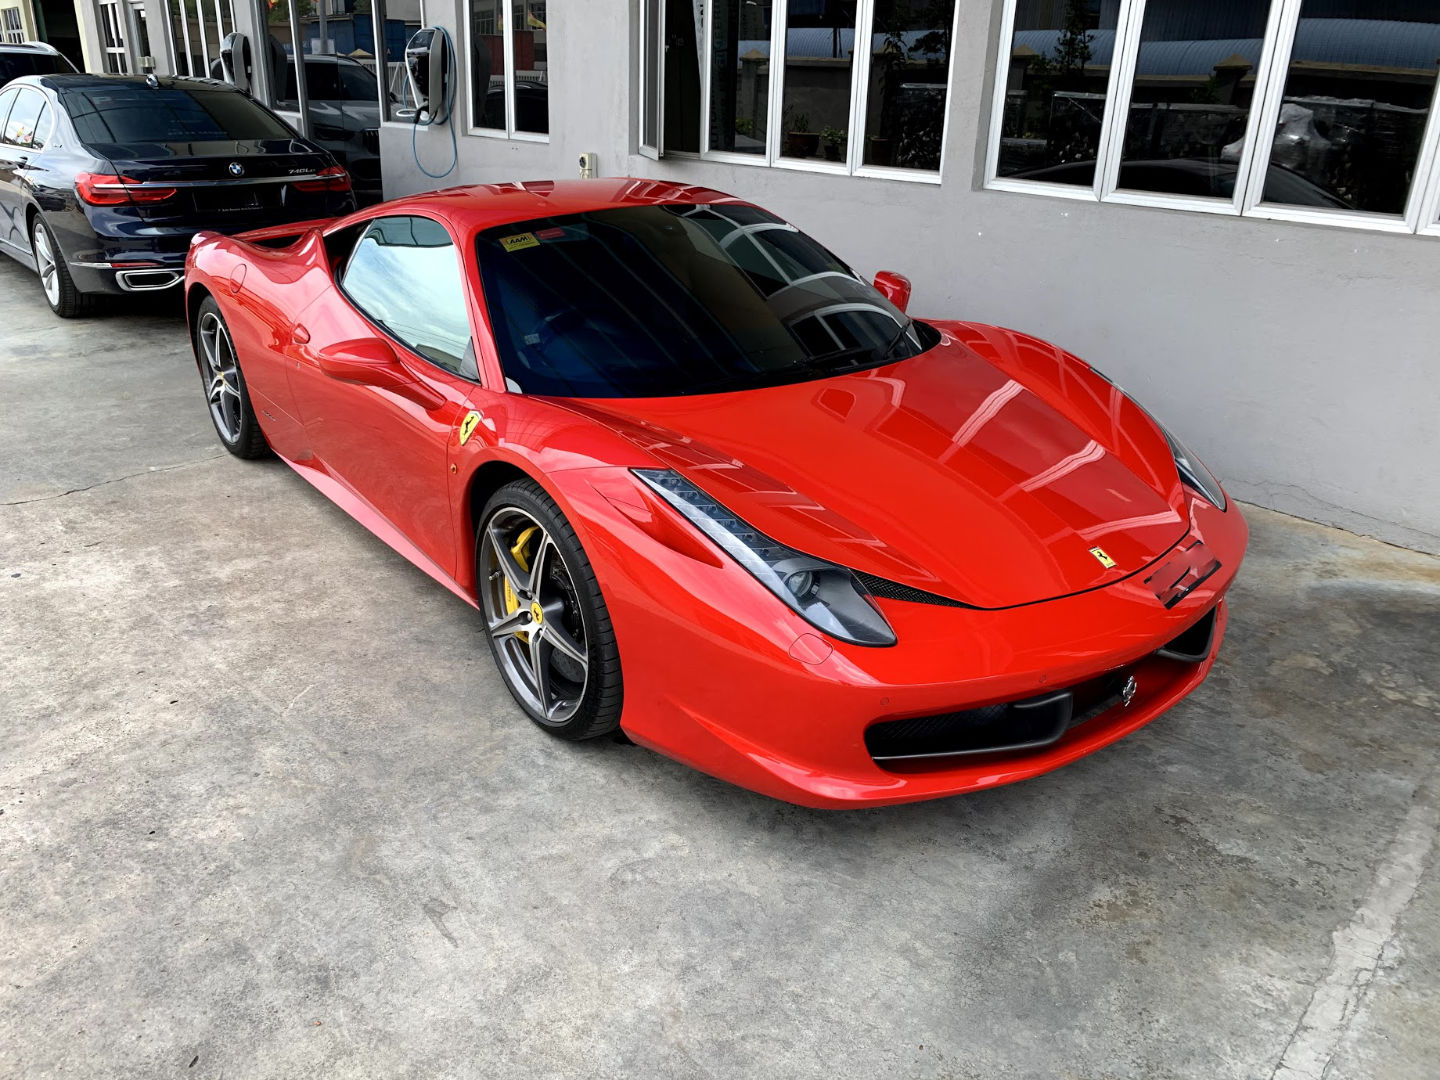 Ferrari 488 Rental